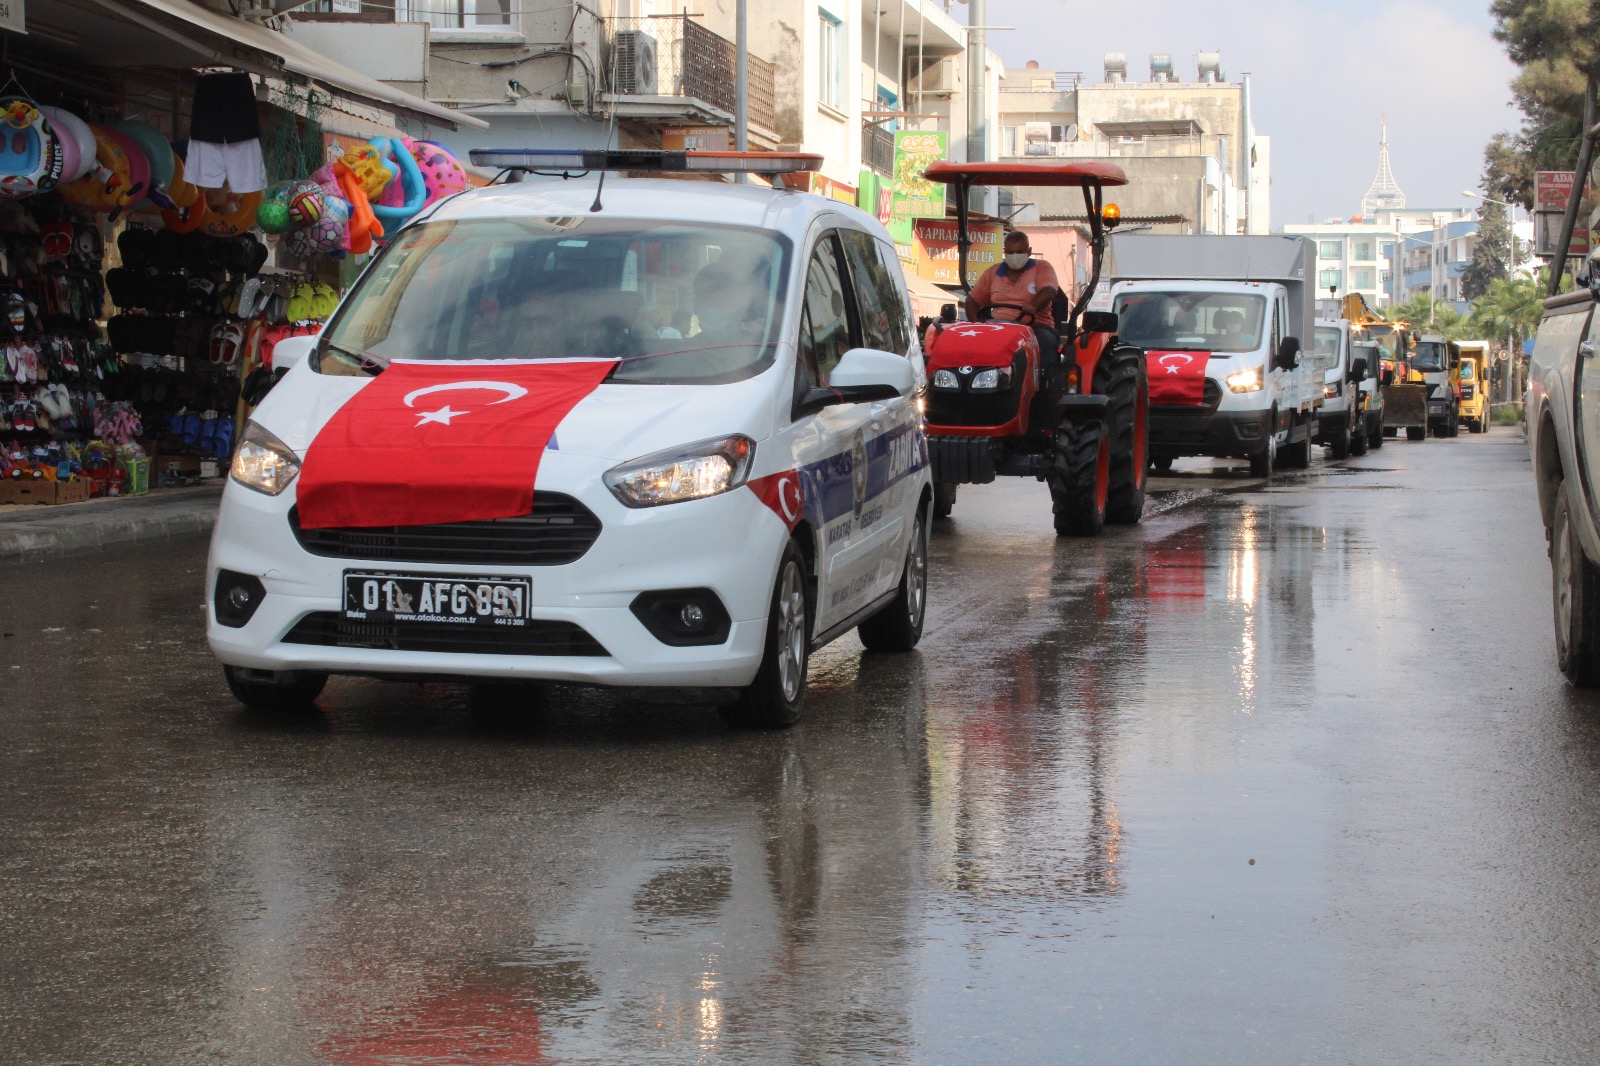 Karataş Belediyesi Yeni Araçlarını Tanıttı. 